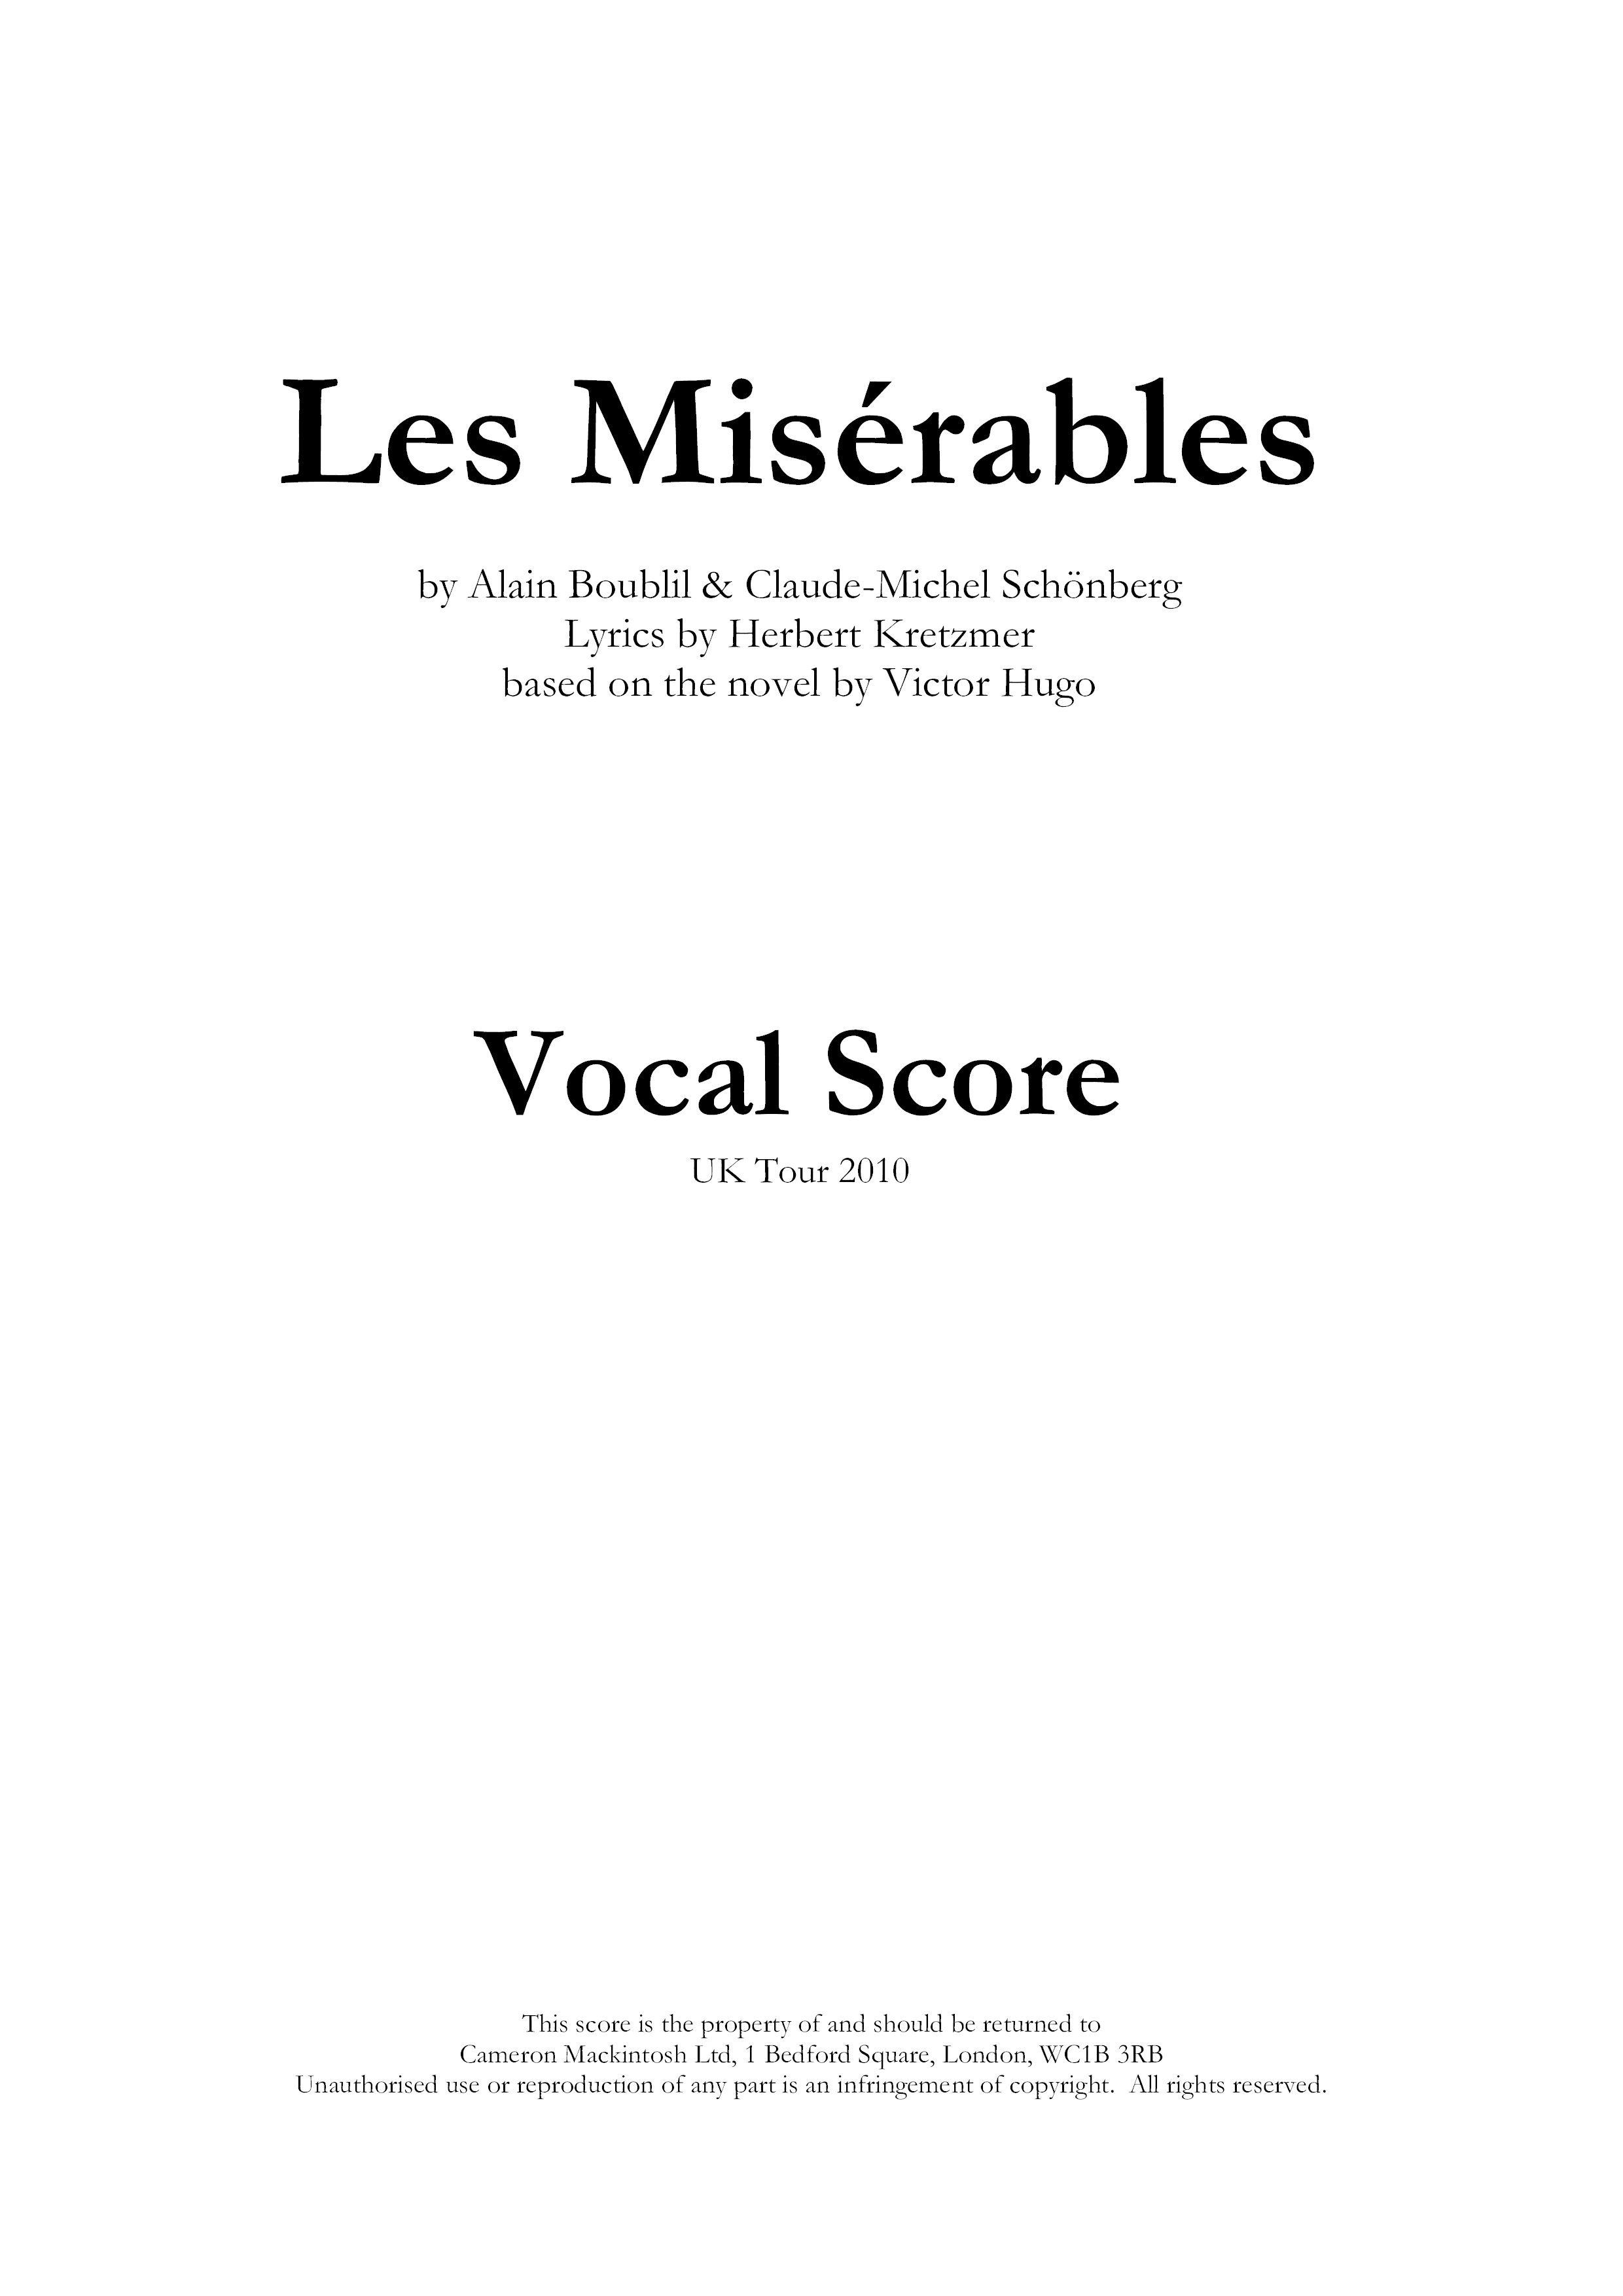 Vocal Score 414 Pages Score